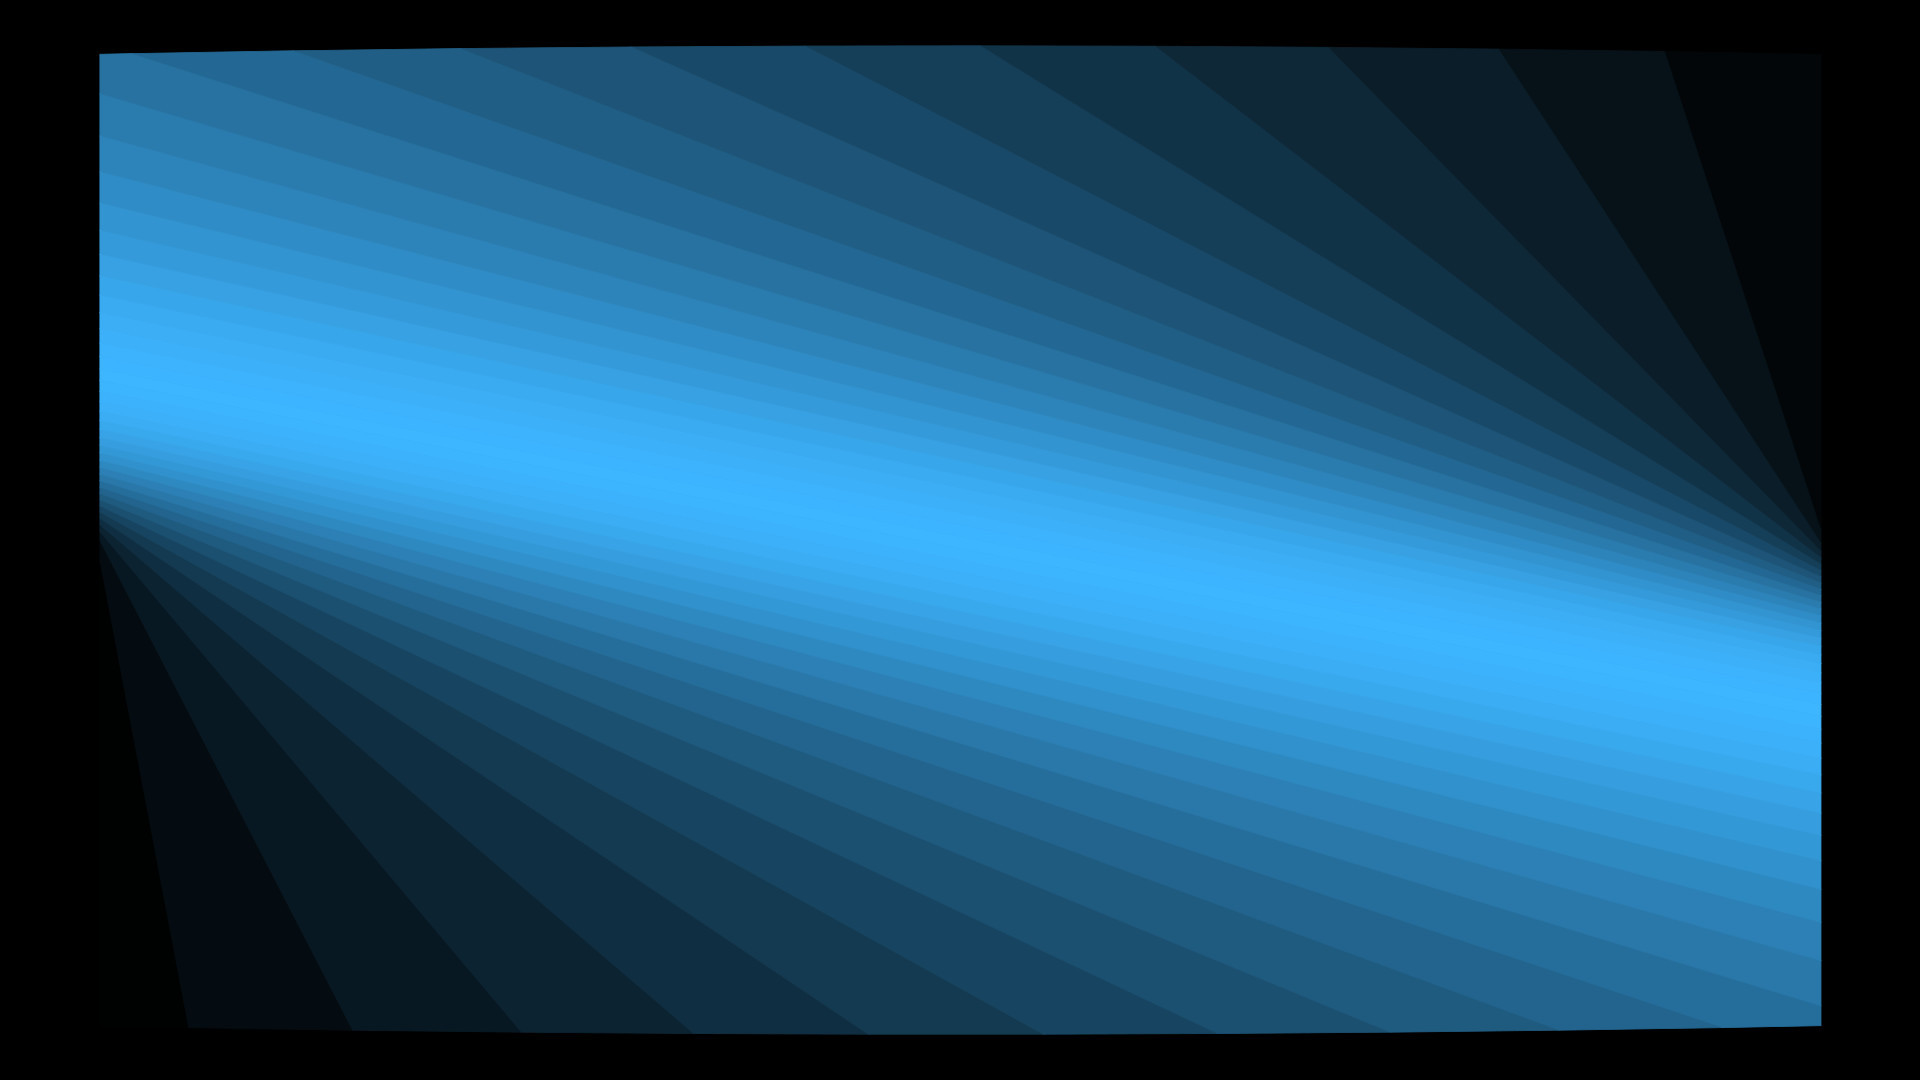 1920x1080  wallpaper linear gradient blue steel blue midnight blue #4682b4  #191970 105ÃÂ°